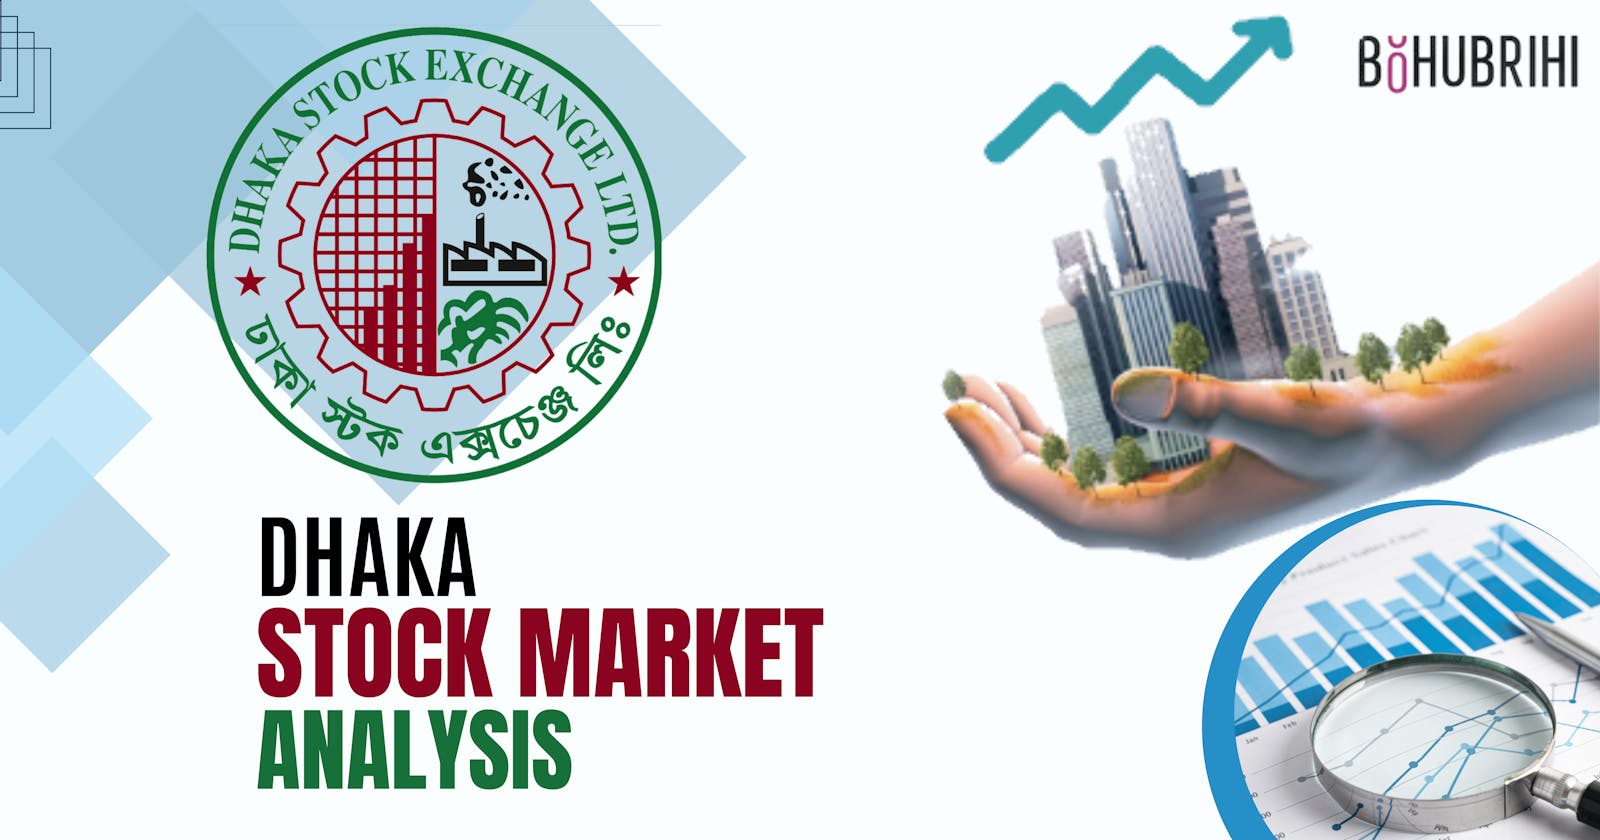 Dhaka Stock Market Data Analysis With Python